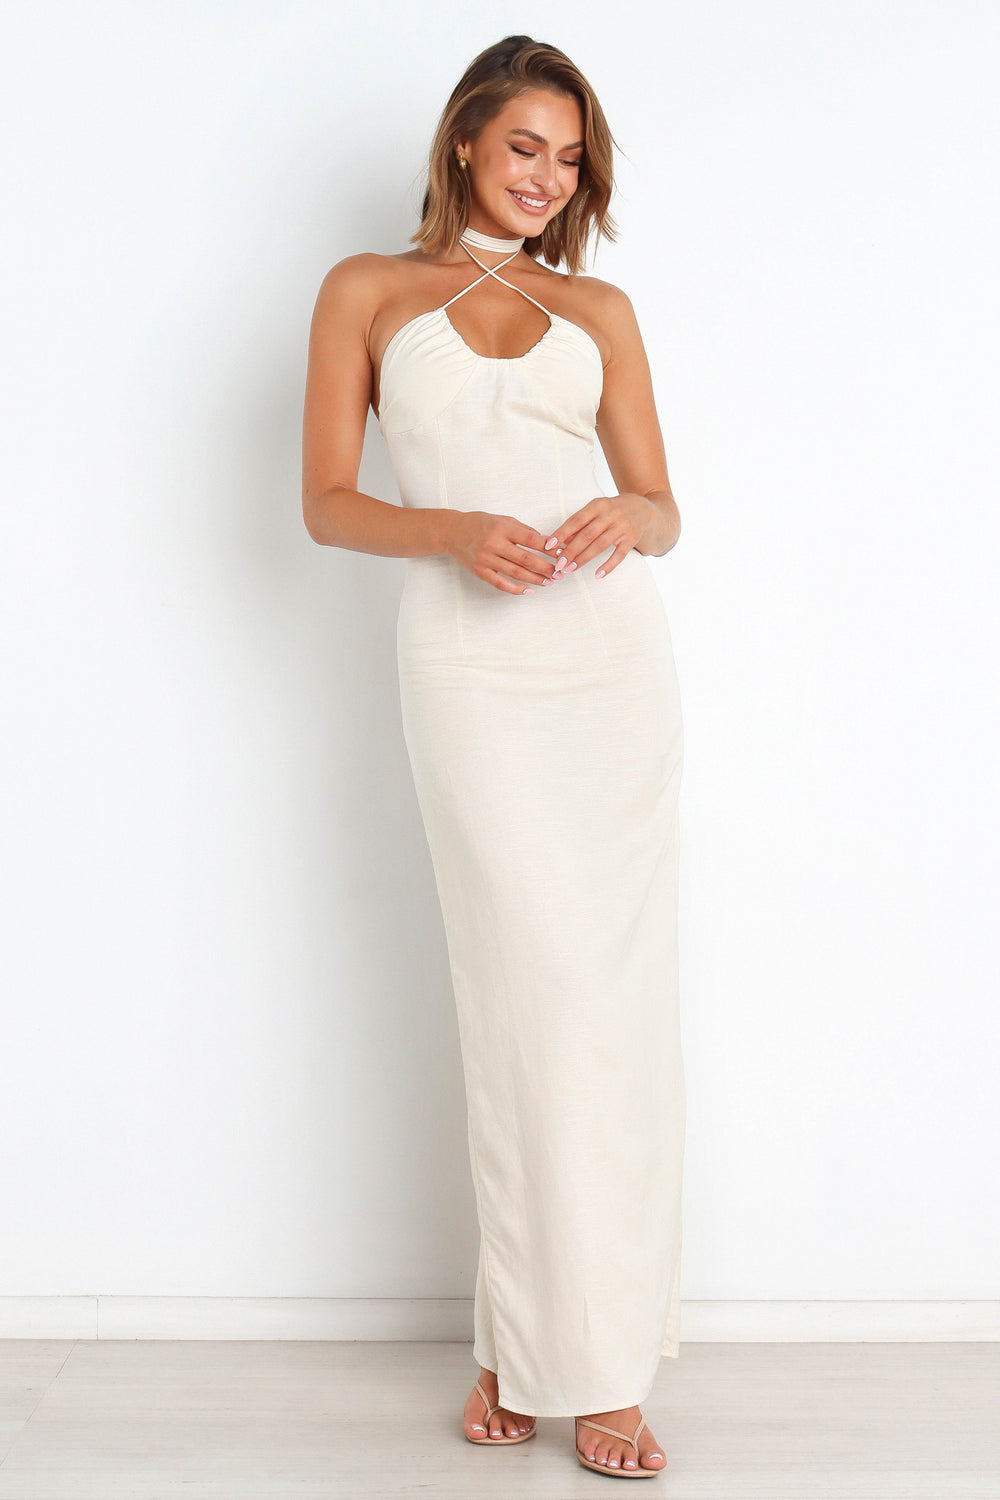 DRESSES Sunset Dress - White